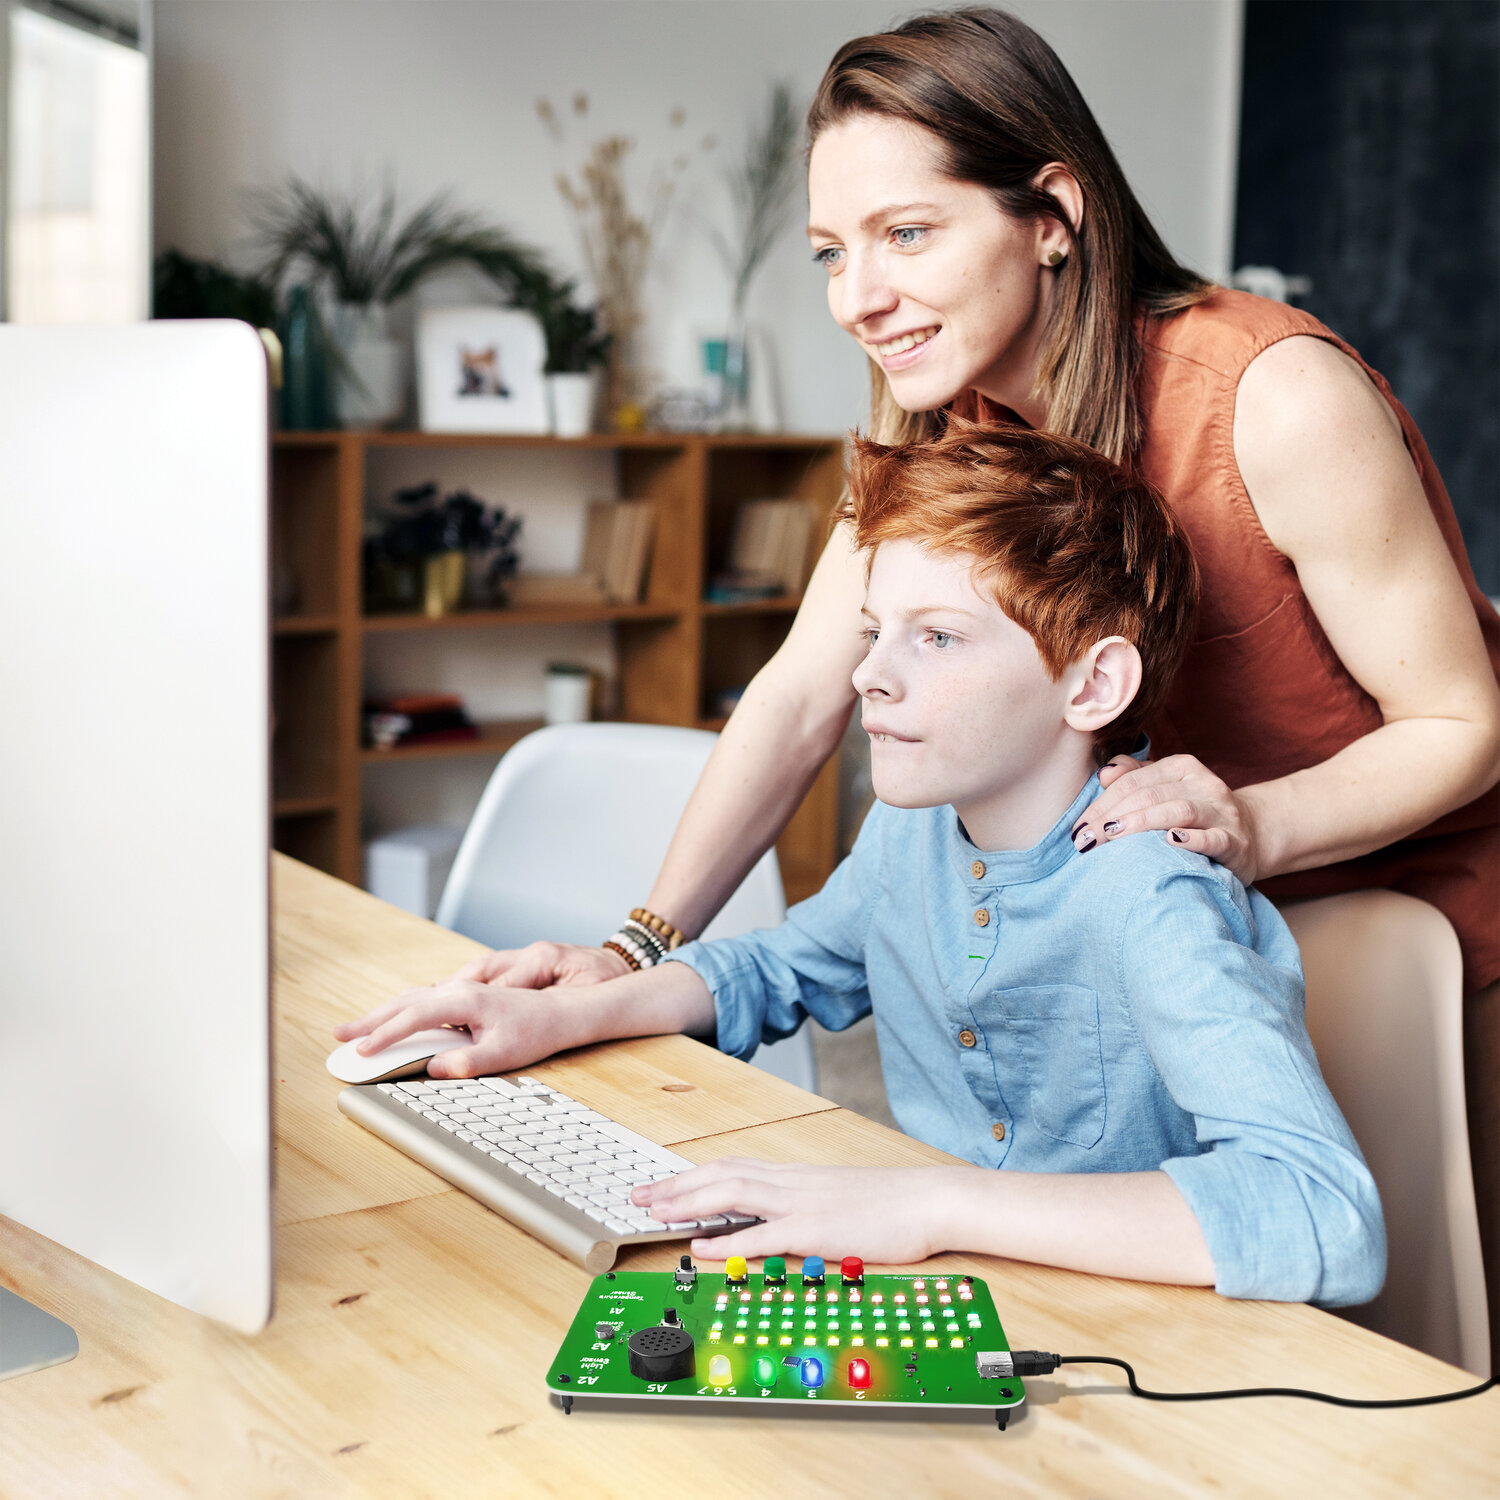 Code Lab aprende a codificar la placa electrónica que muestra un niño en uso mediante una computadora que observa su madre